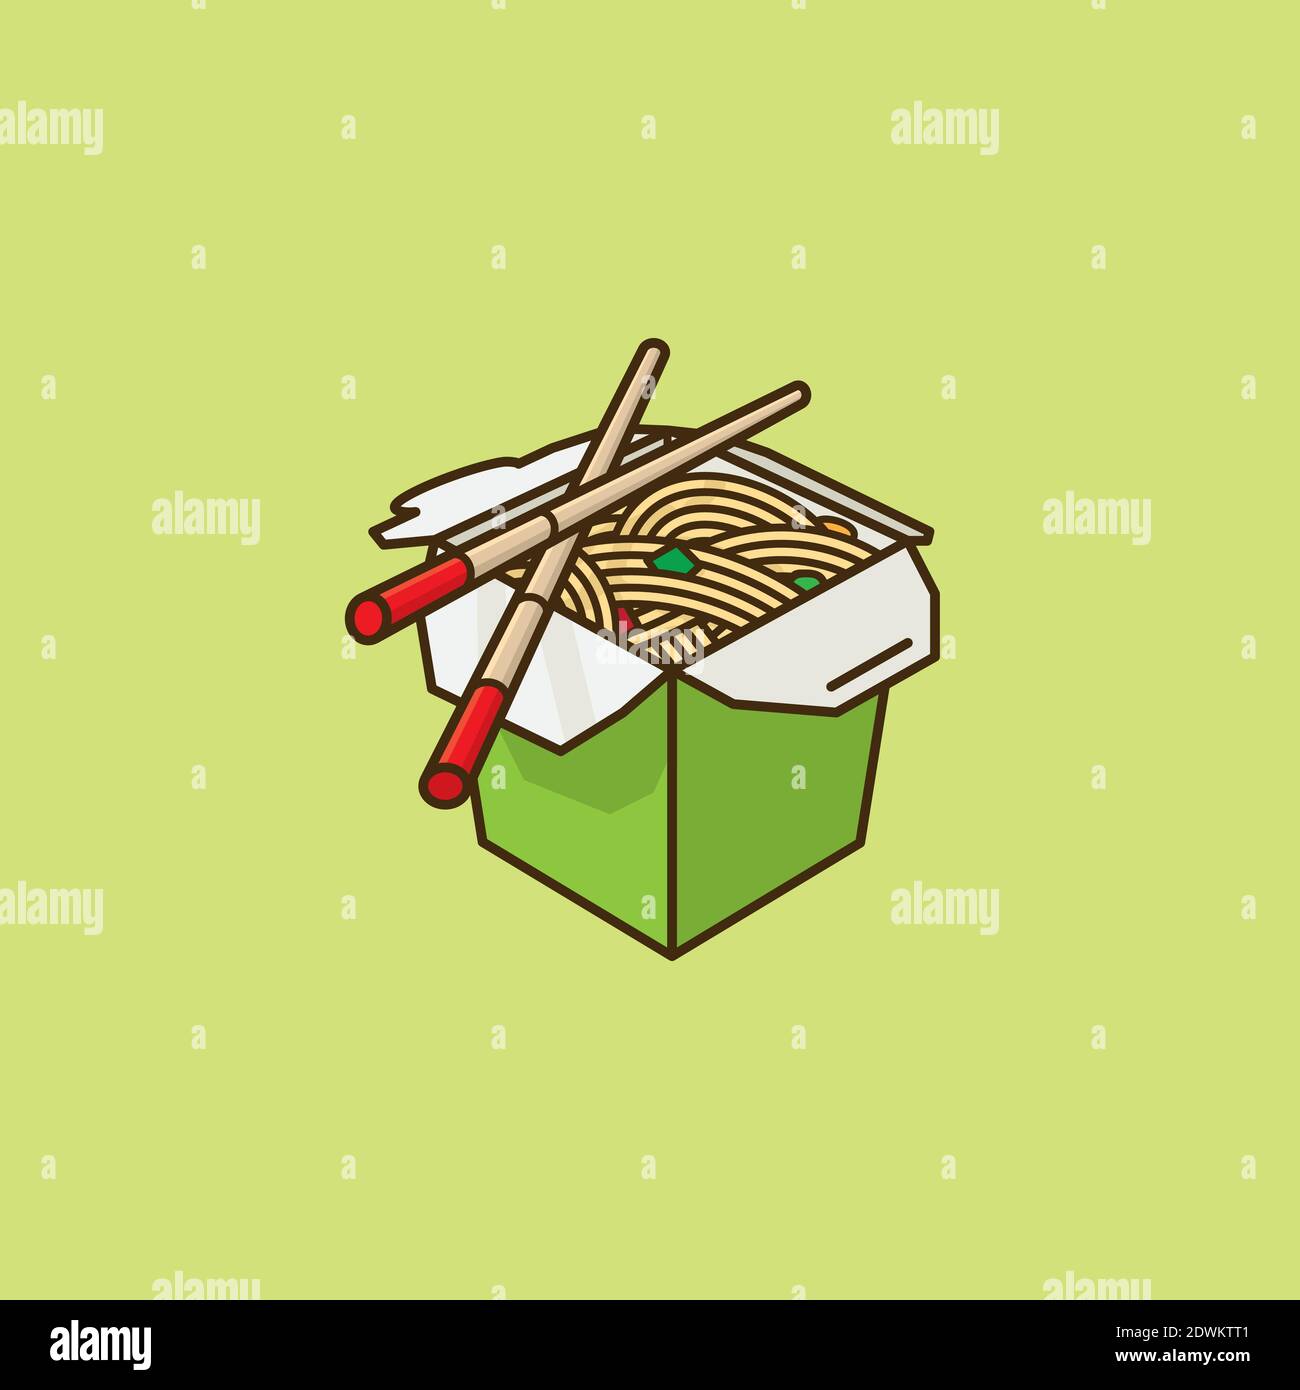 Chinesische Take-Out Food Box und Essstäbchen Vektor-Illustration für Chop Suey Day am 29. August. Farbsymbol für asiatische Lebensmittel. Stock Vektor